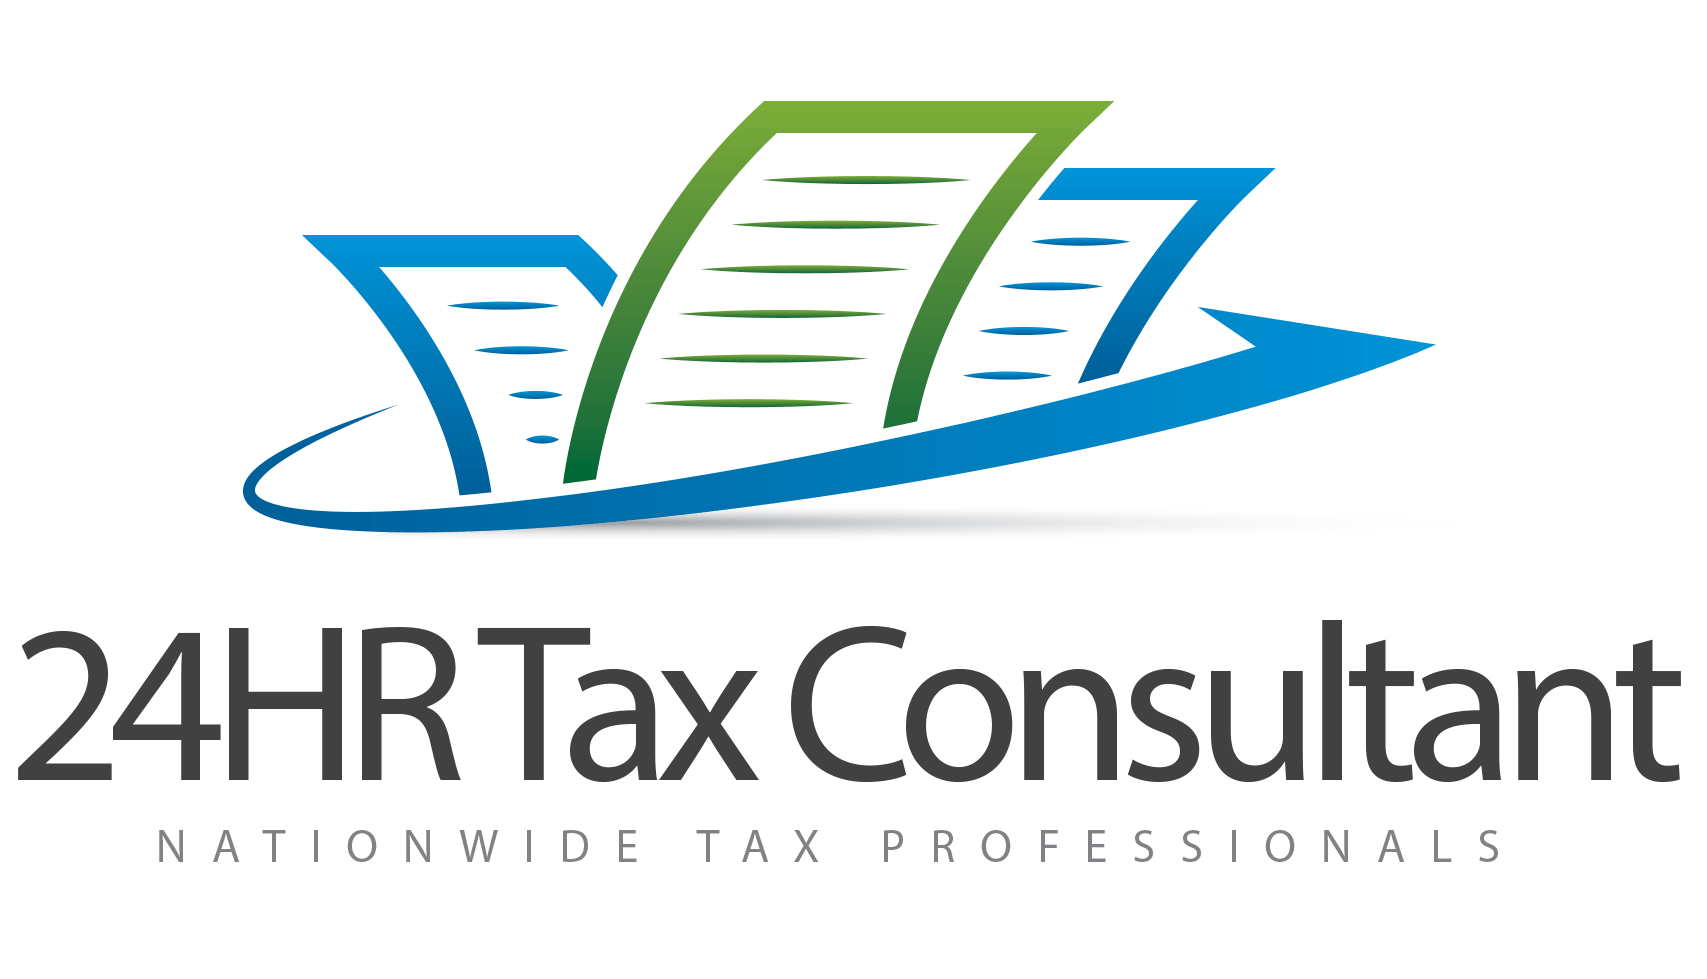 24hr Tax Consultnat Logo